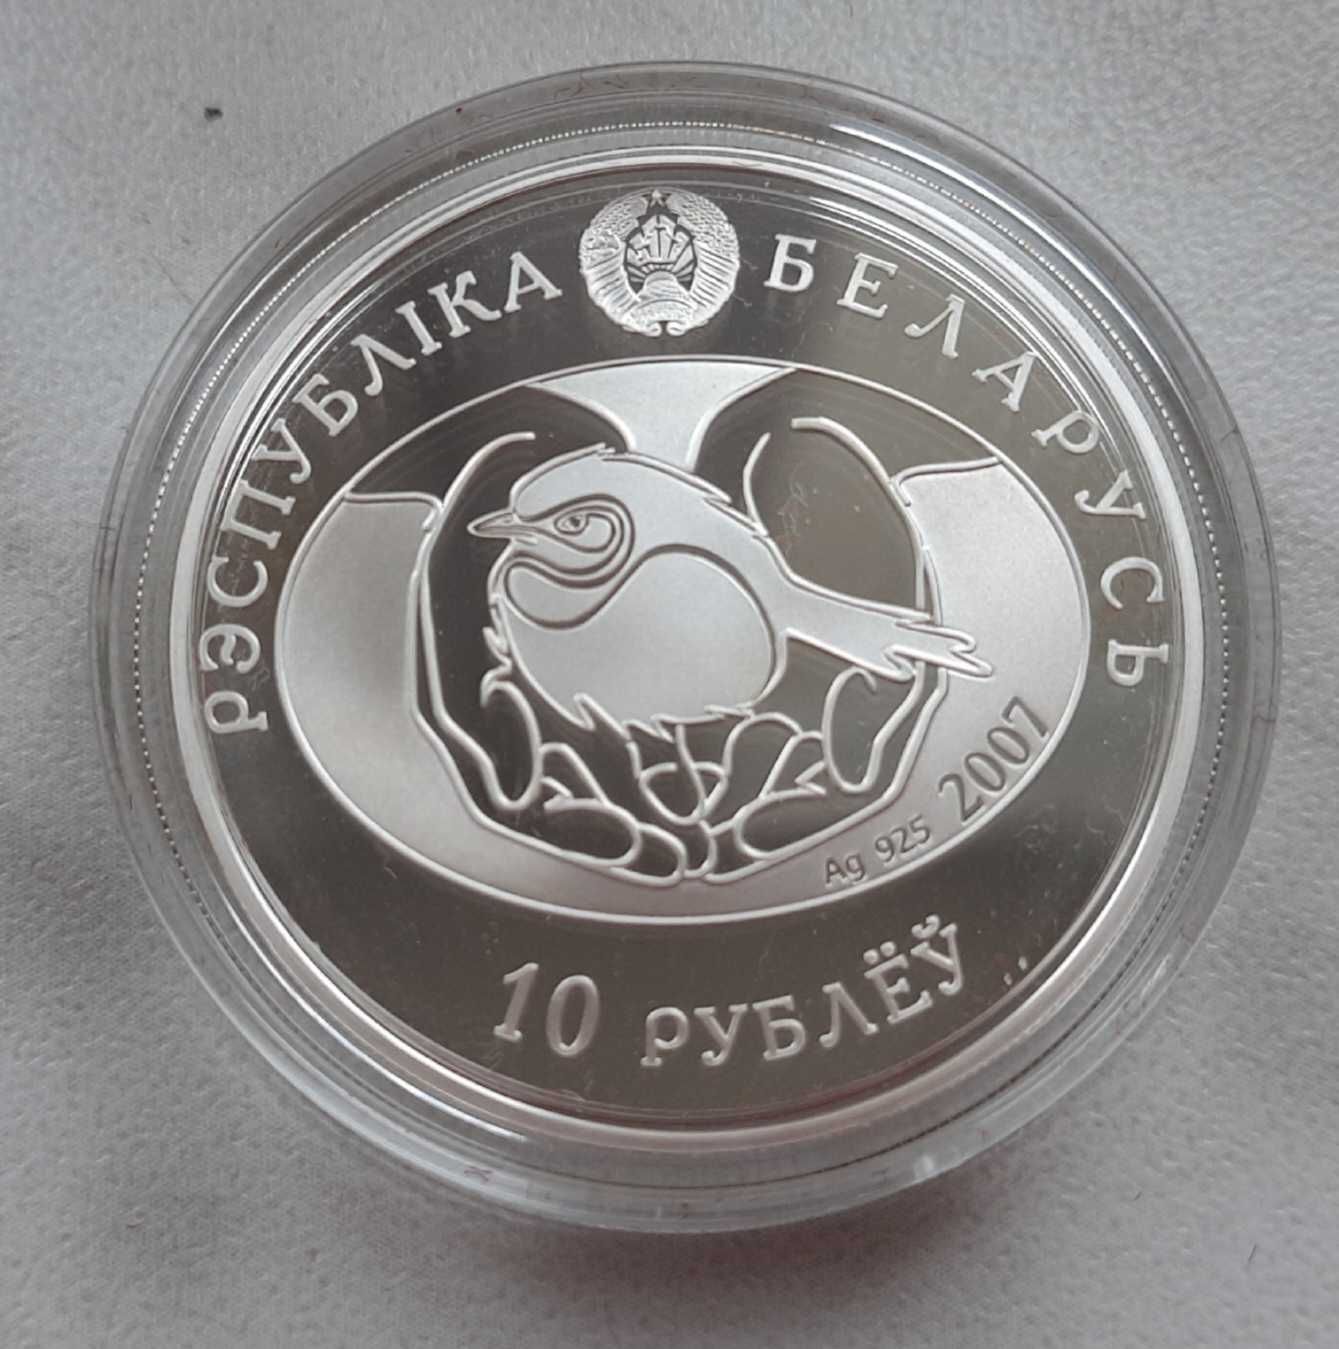 2 monety z Białorusi - 1 i 10 rubli z 2007 roku - słowik zwyczajny